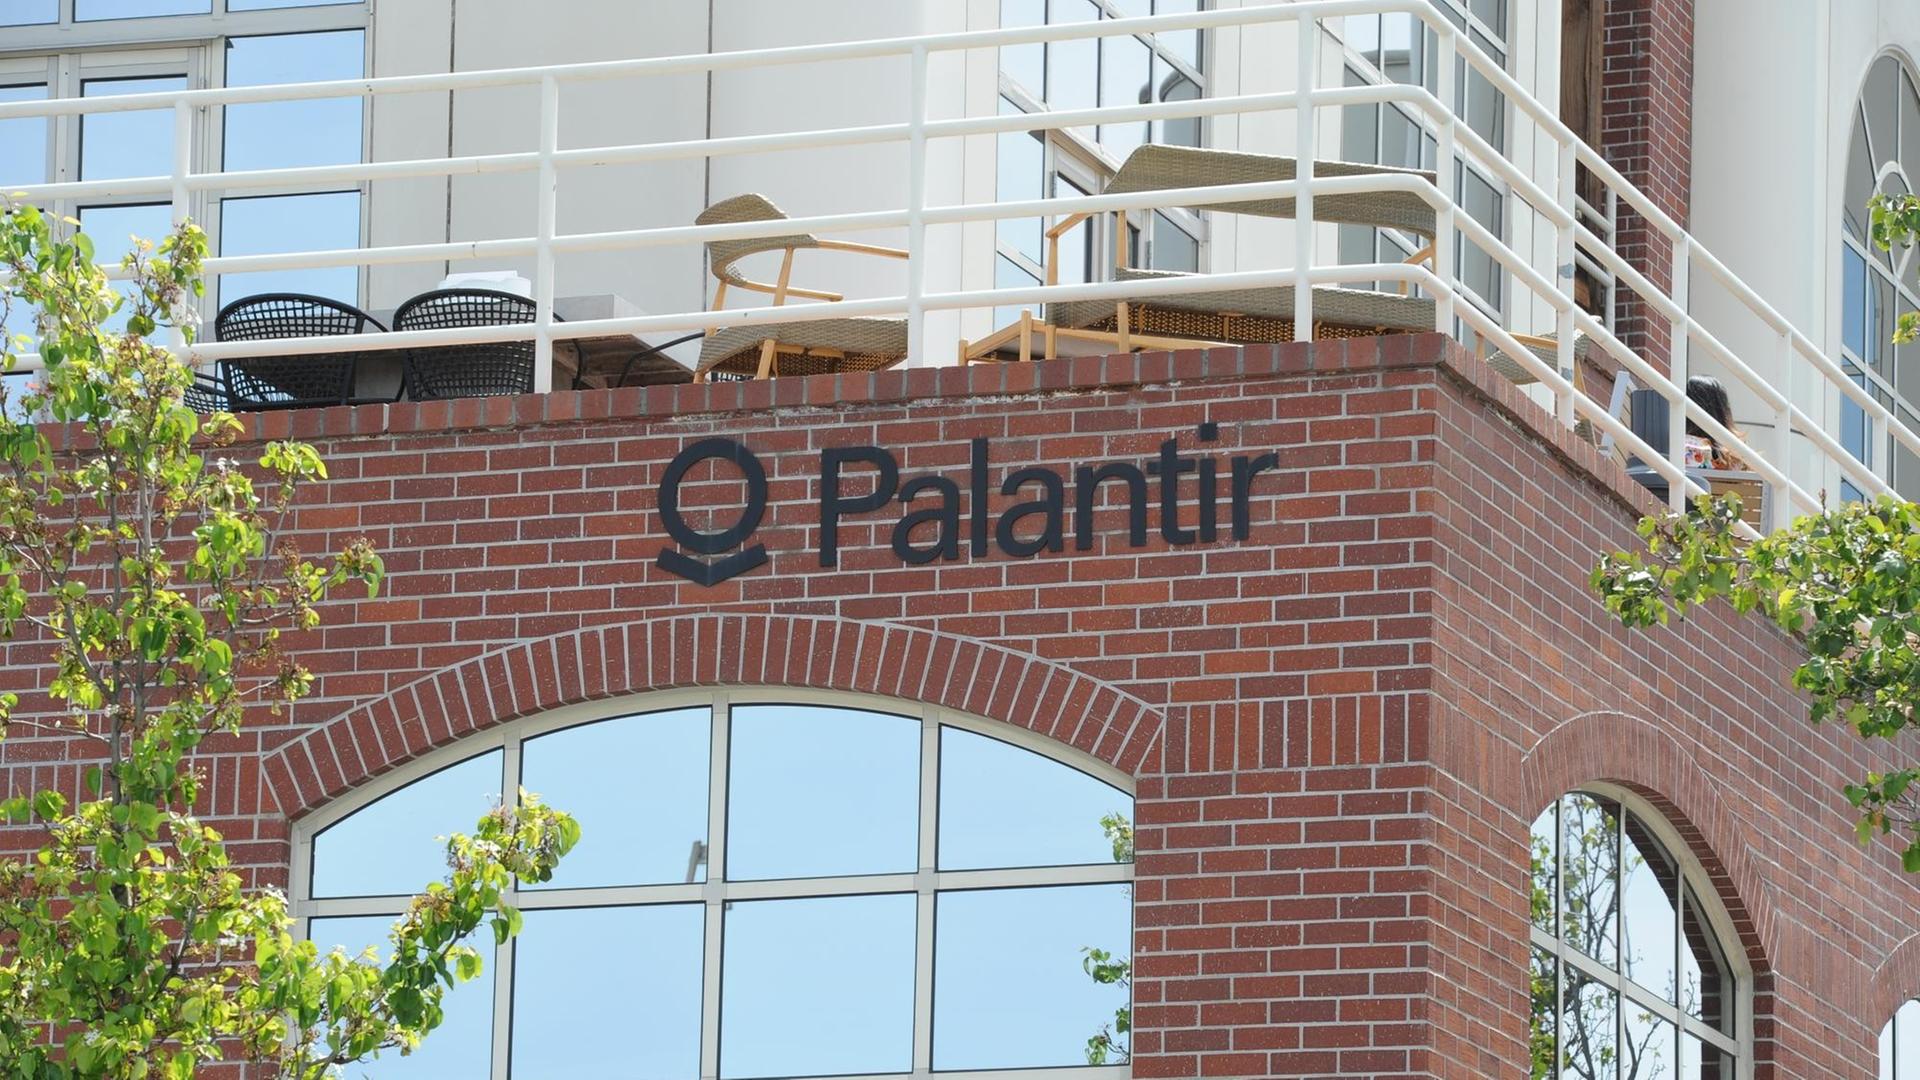 Hauptquartier der Firma Palantir in Palo Alto